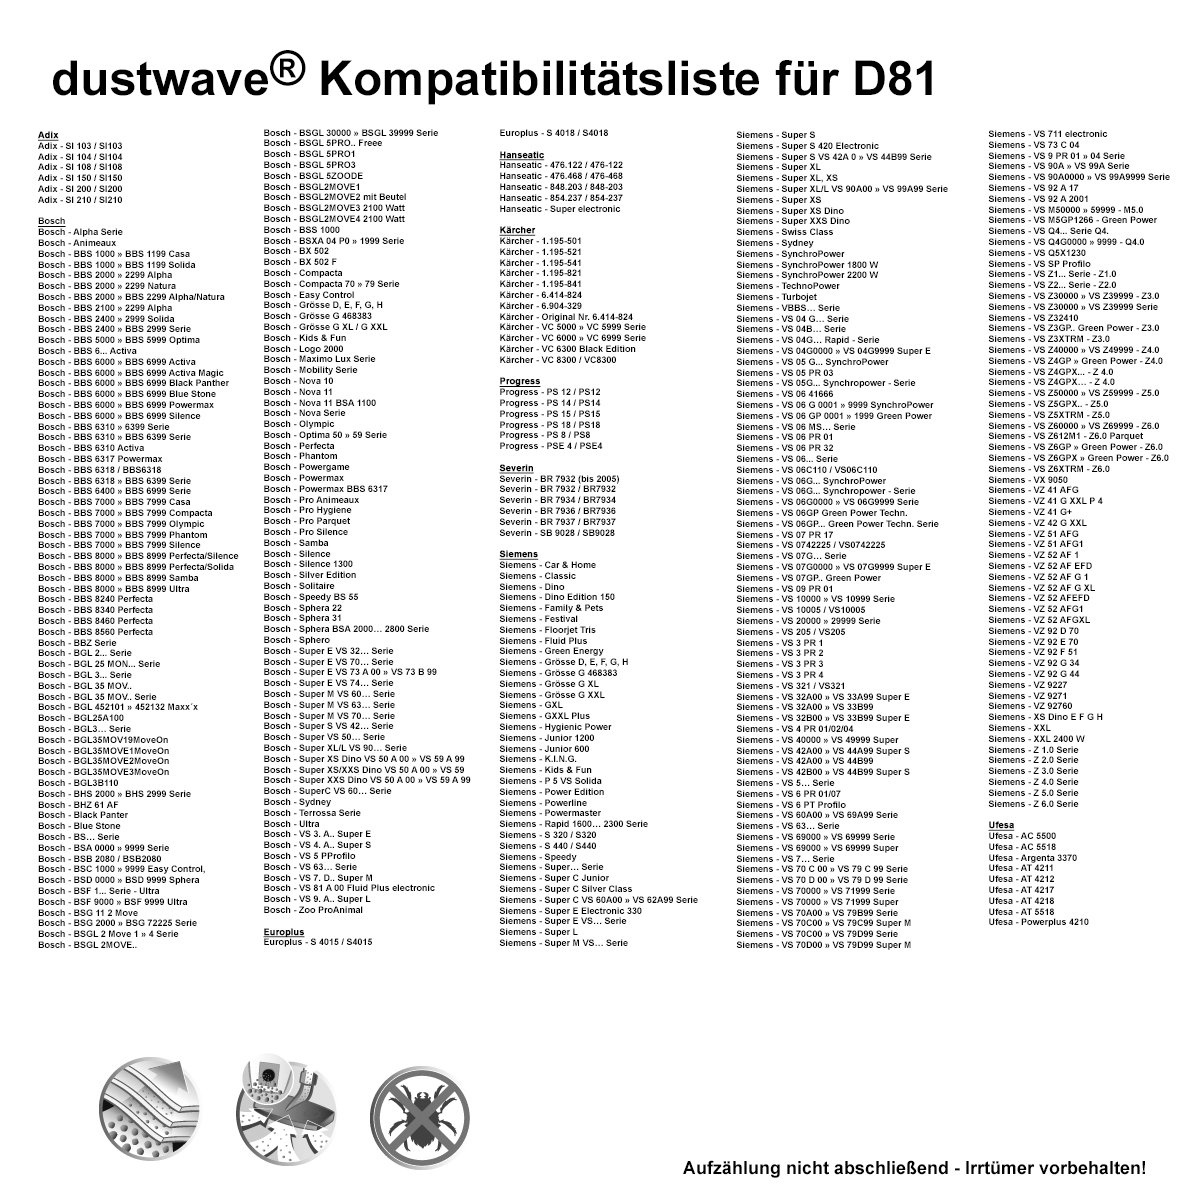 Dustwave® 1 Staubsaugerbeutel für Base BA 2000 / BA2000 - hocheffizient mit Hygieneverschluss - Made in Germany